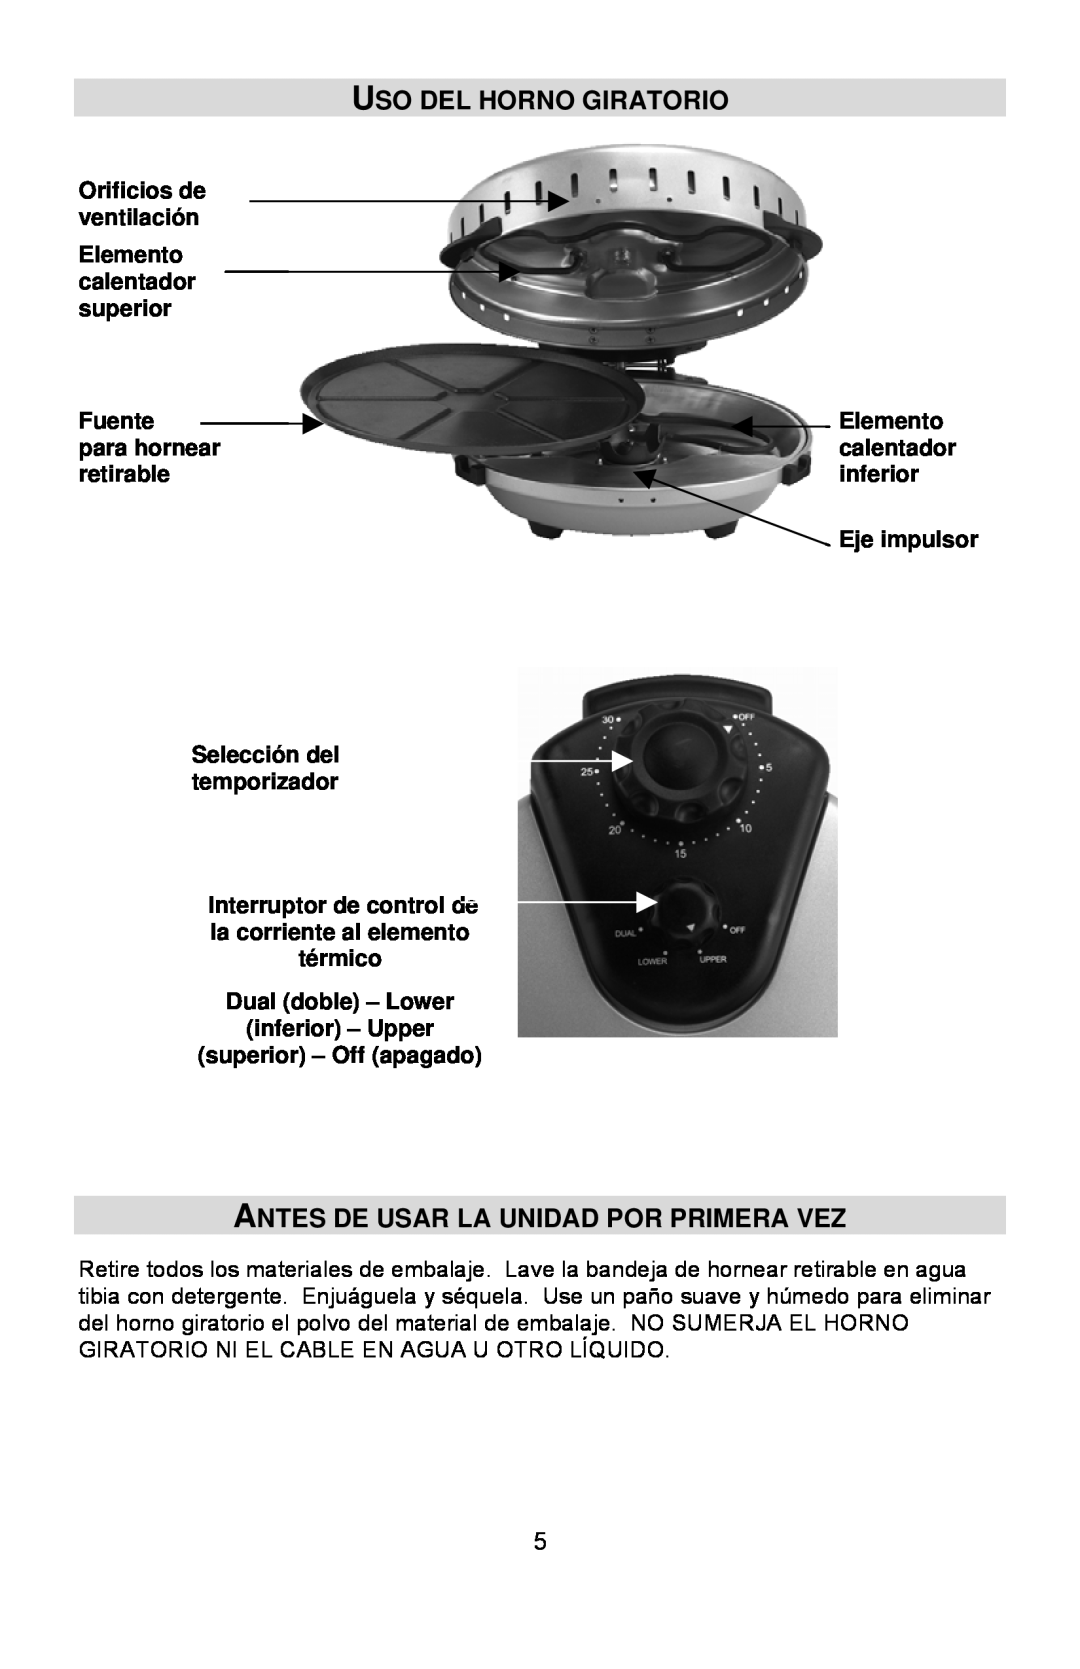 West Bend Rotary Oven instruction manual Uso Del Horno Giratorio, Antes De Usar La Unidad Por Primera Vez 